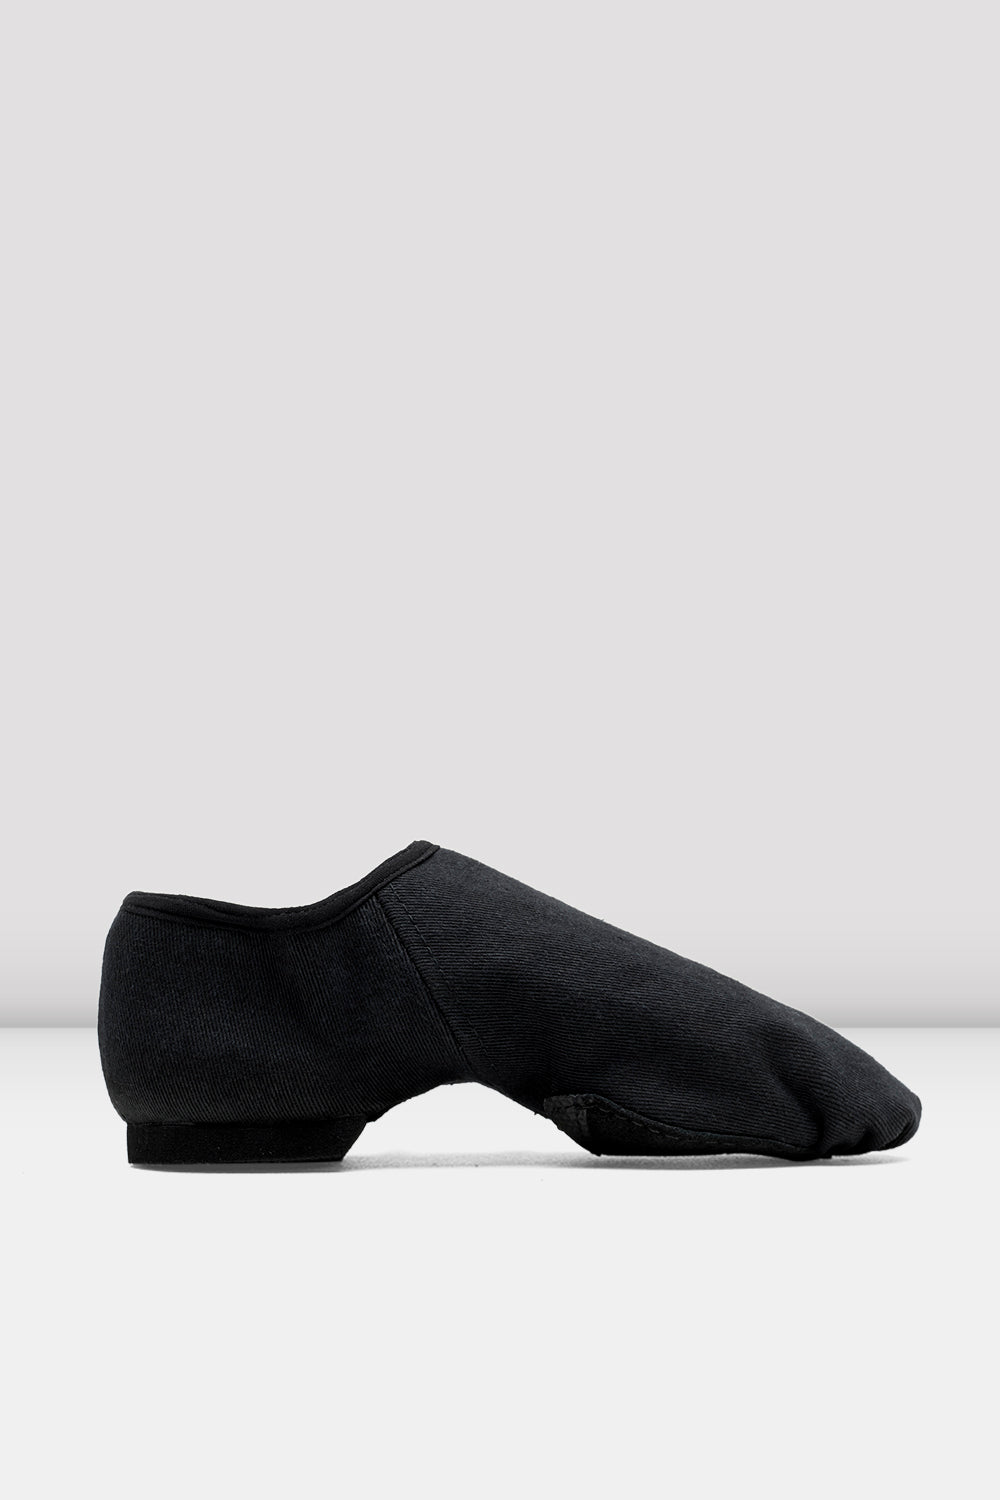 black slip on jazz shoes